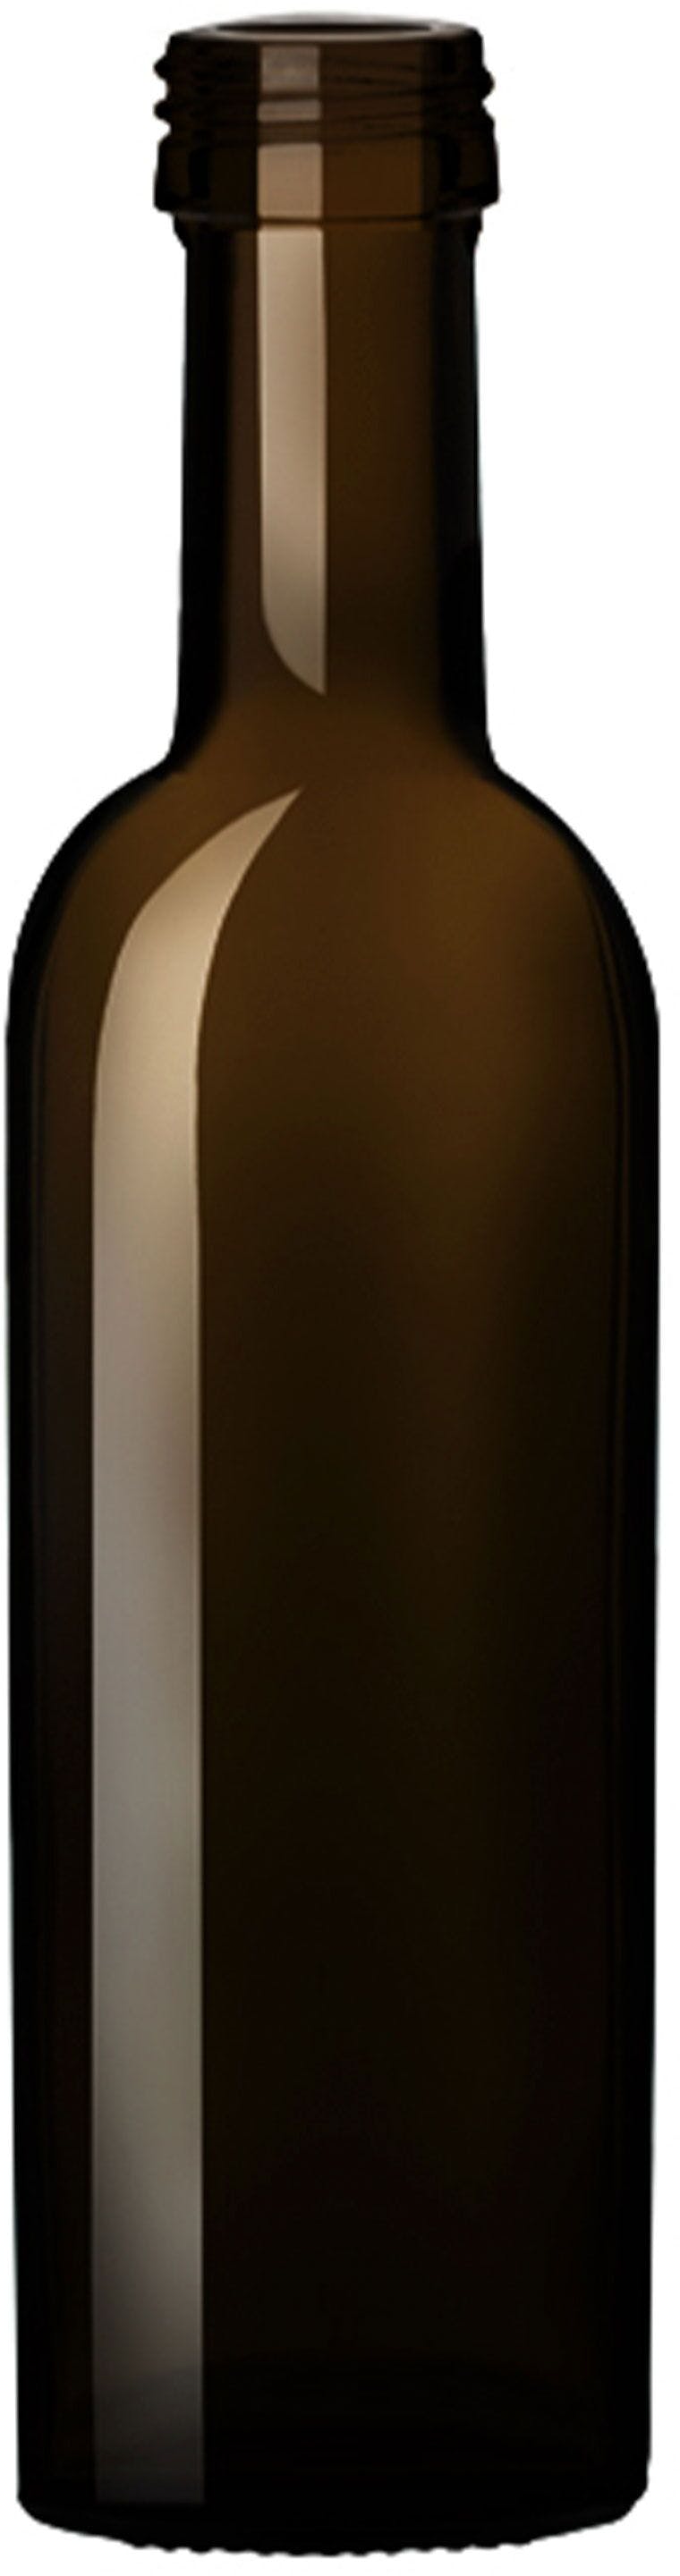 Bottle CHIA 250 P 31,5X18 VA